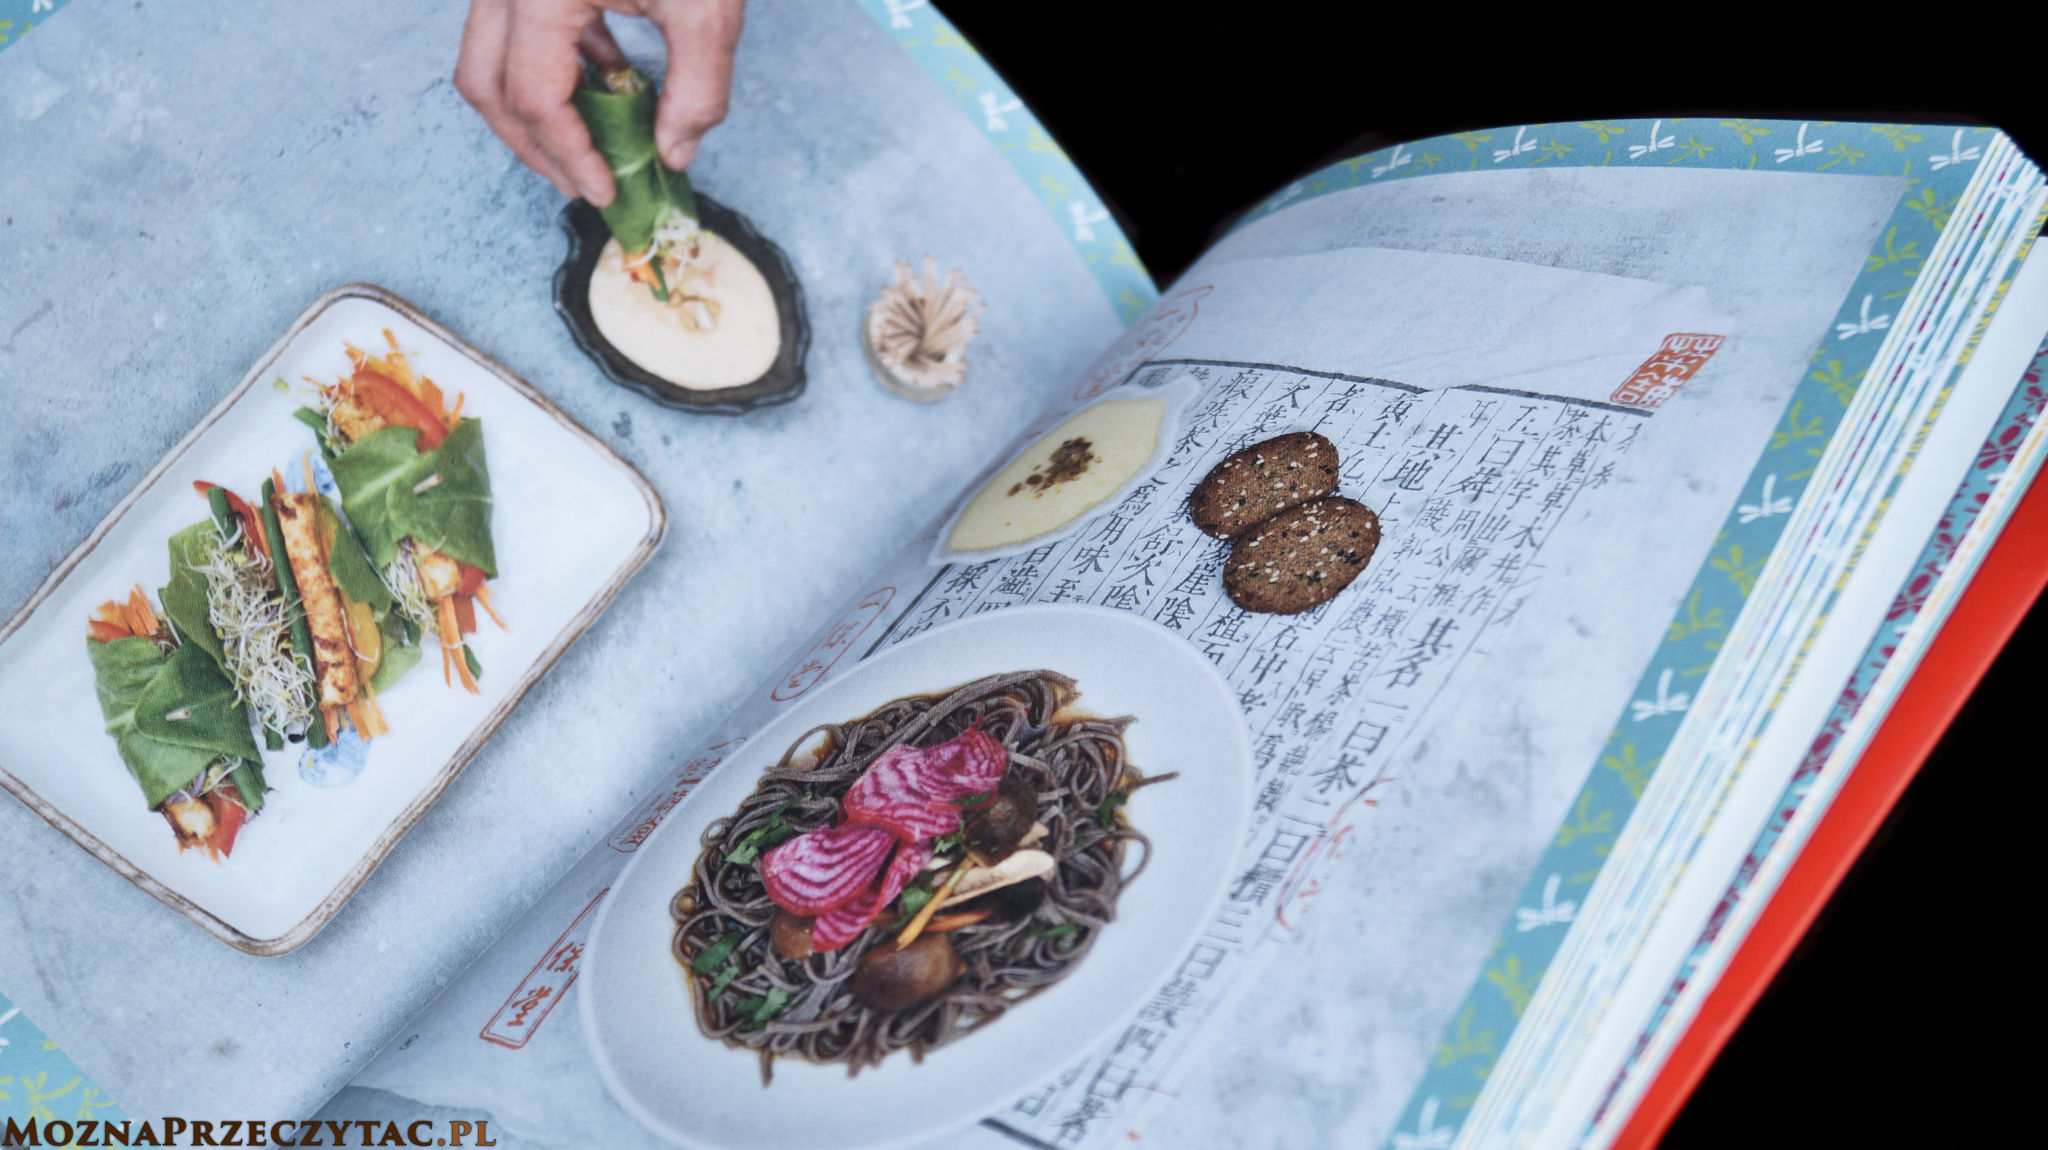 Okinawa Food. Co jeść, aby żyć dłużej w zdrowiu - Laure Kié, Kathy Bonan